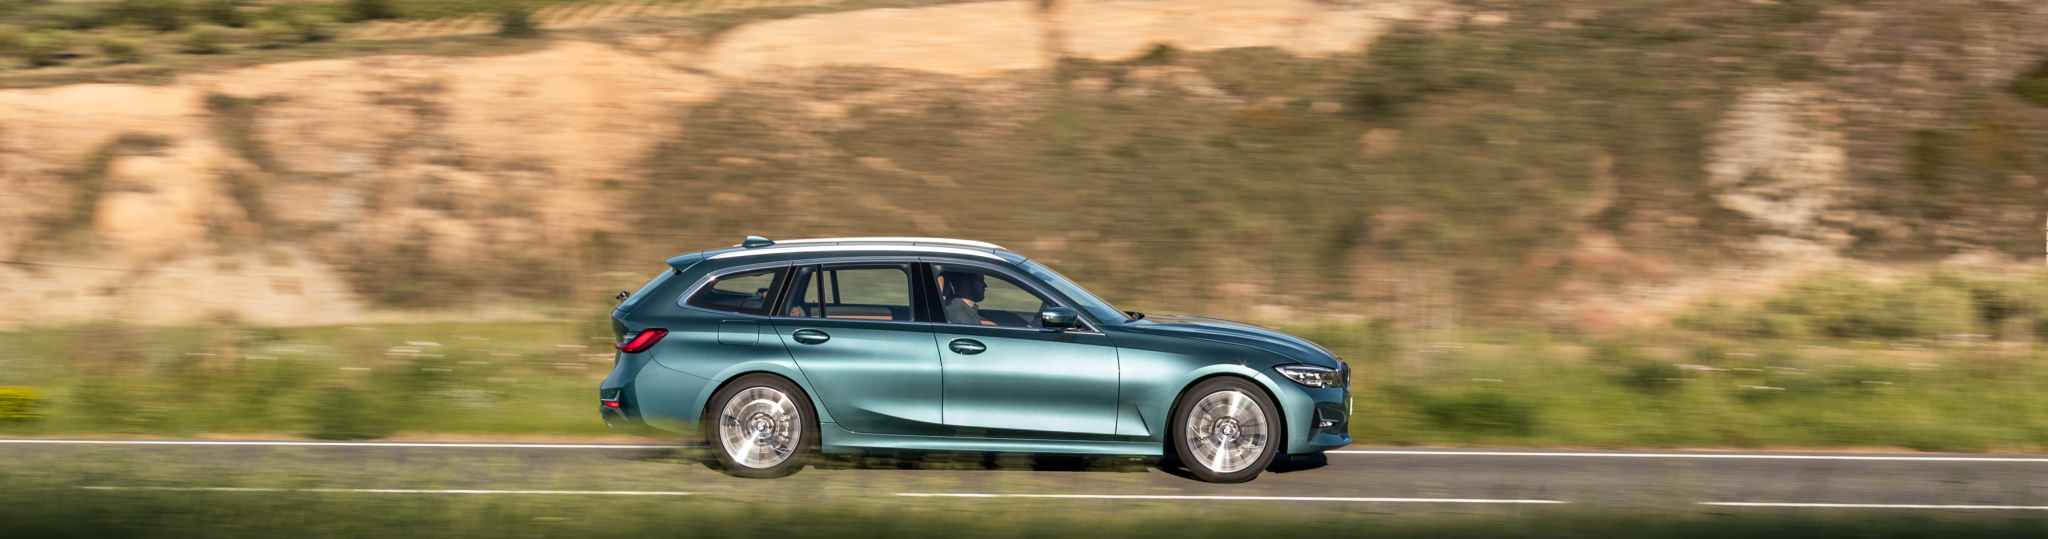 P90352642 highRes - BMW Serie 3 Touring 2019: un familiar más grande cargado de tecnología